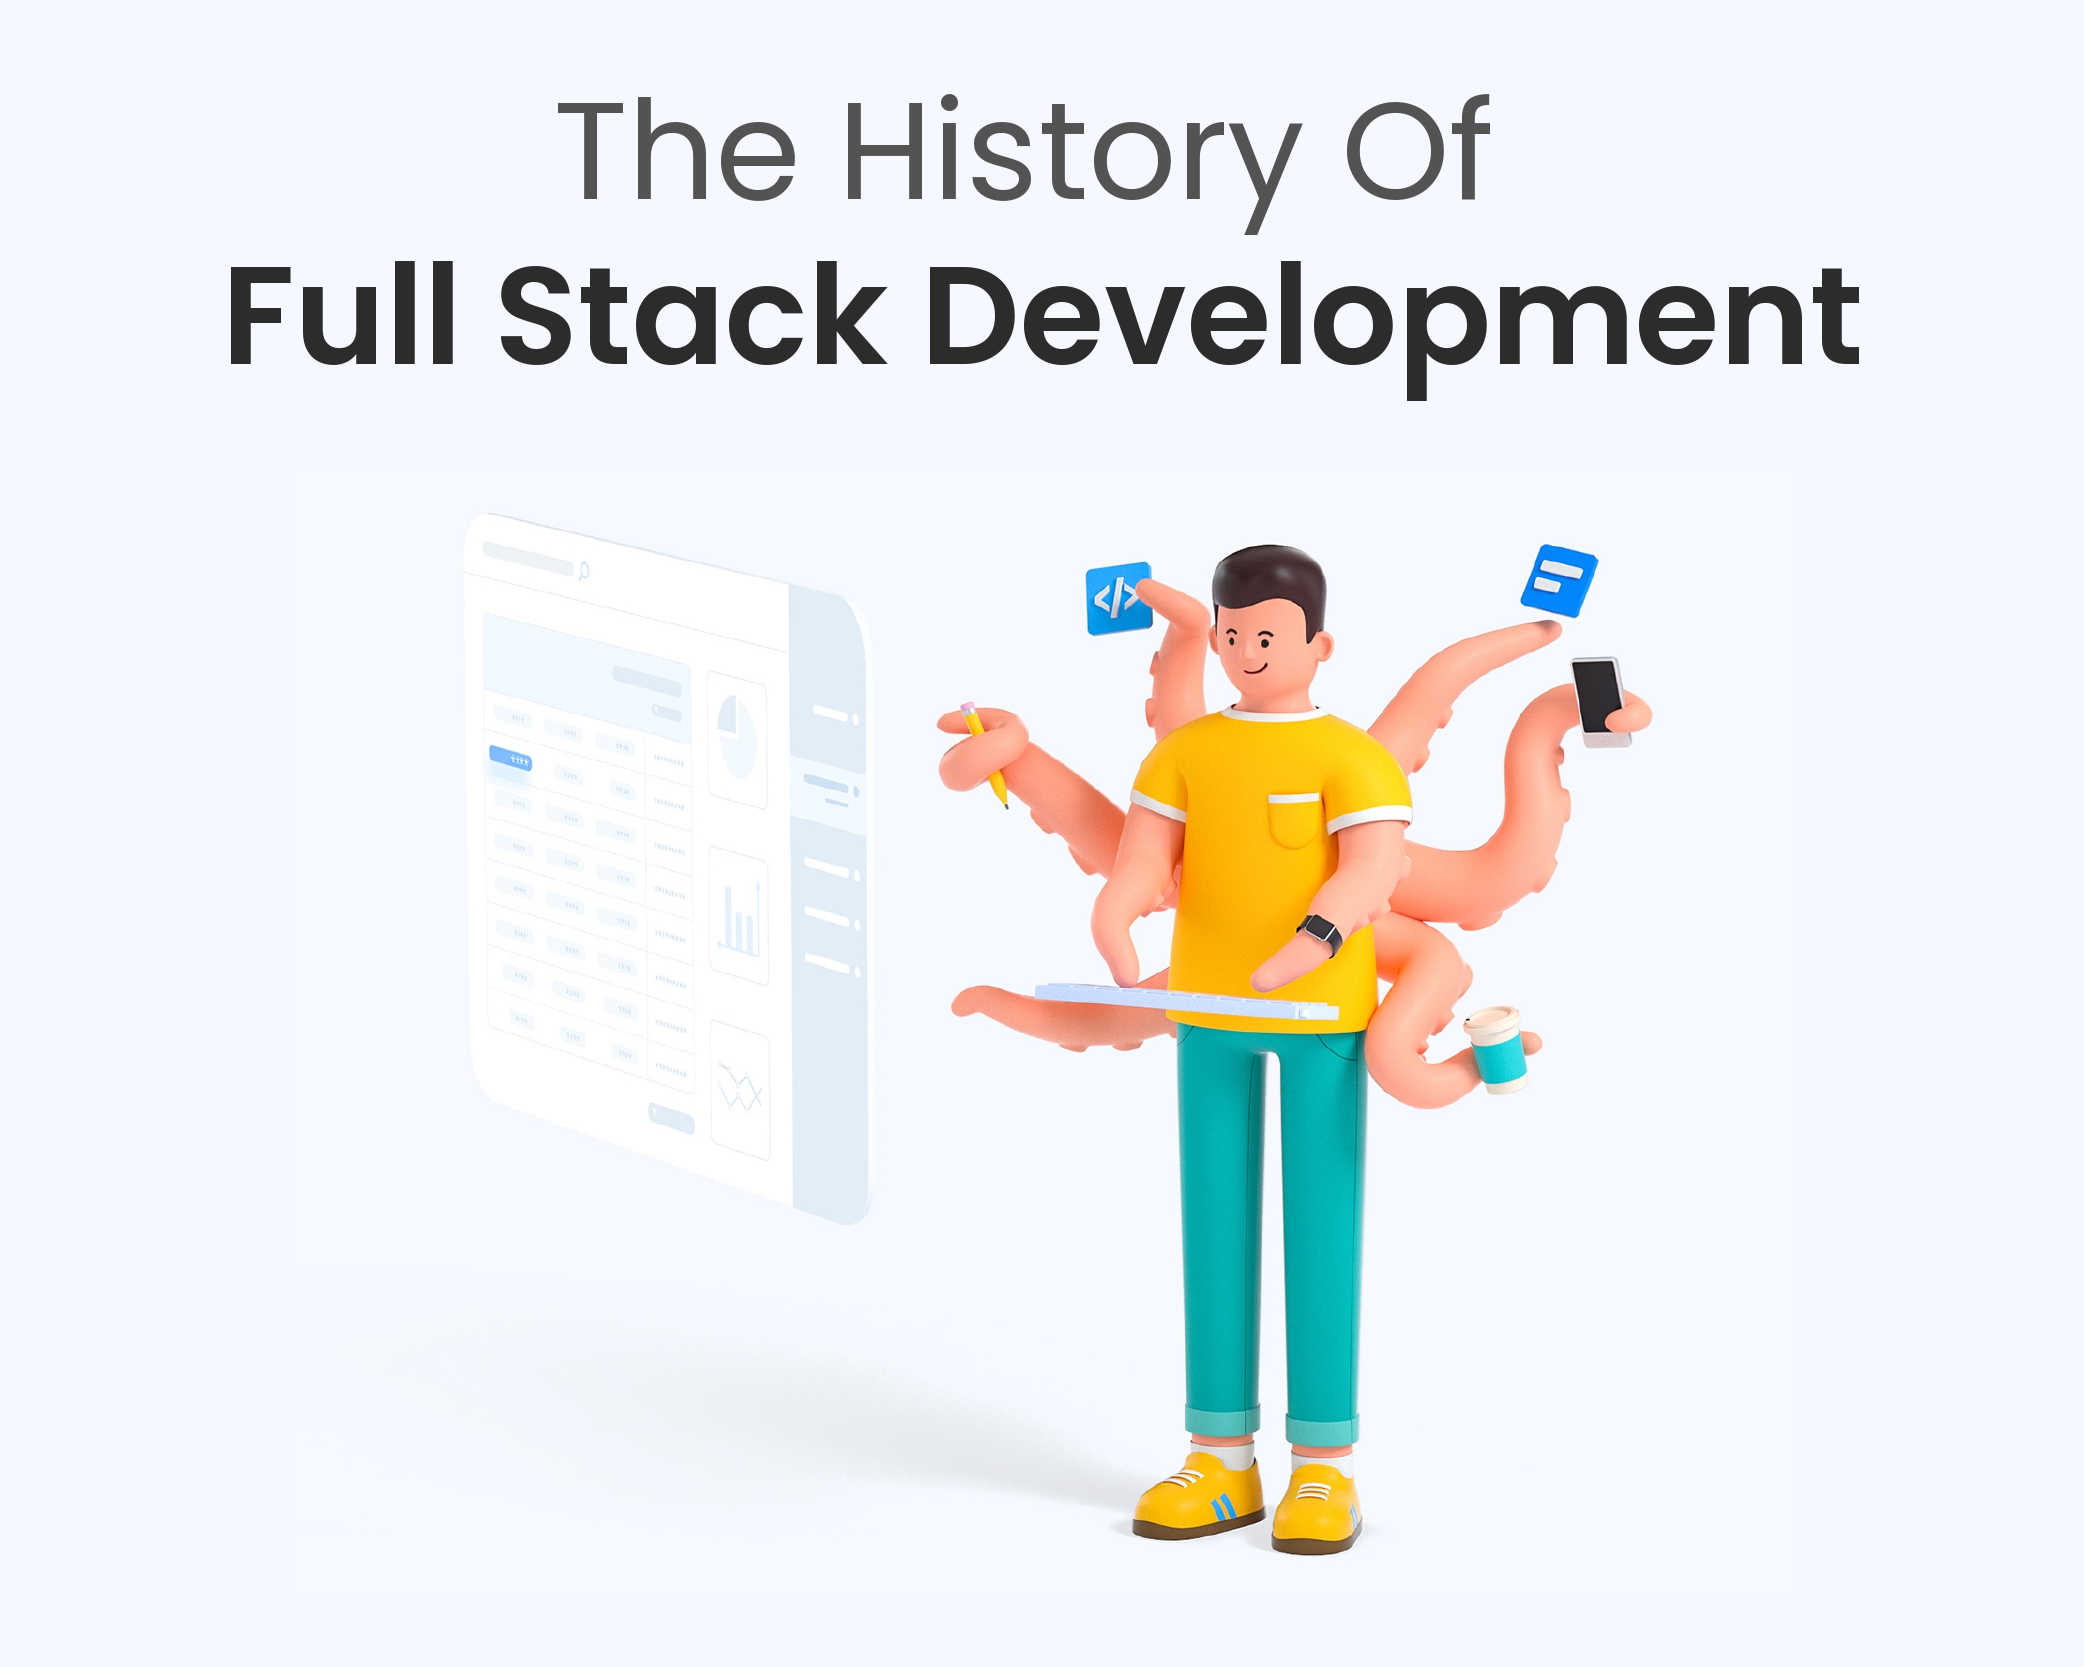 History of Full Stack Development